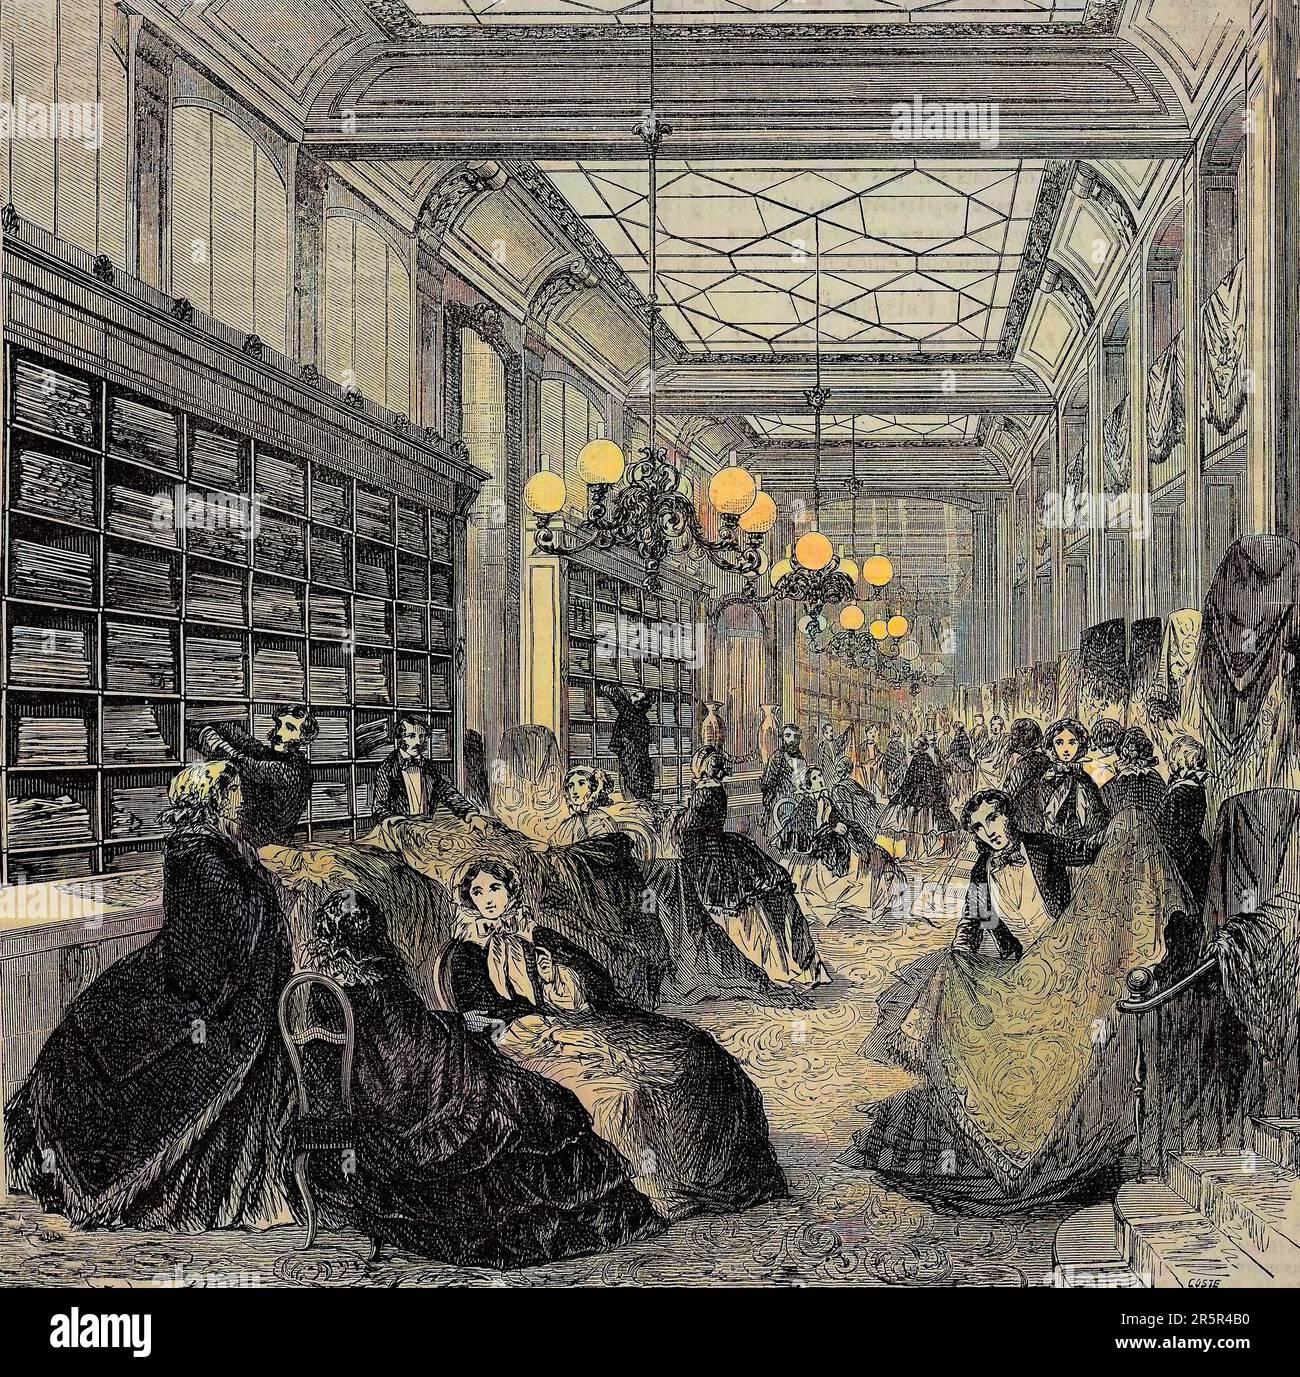 Magasin de Cachemire a Paris au 19eme siecle - The cashmere stores in the Les magasins du Louvre, Paris, France, 1858 Stock Photo